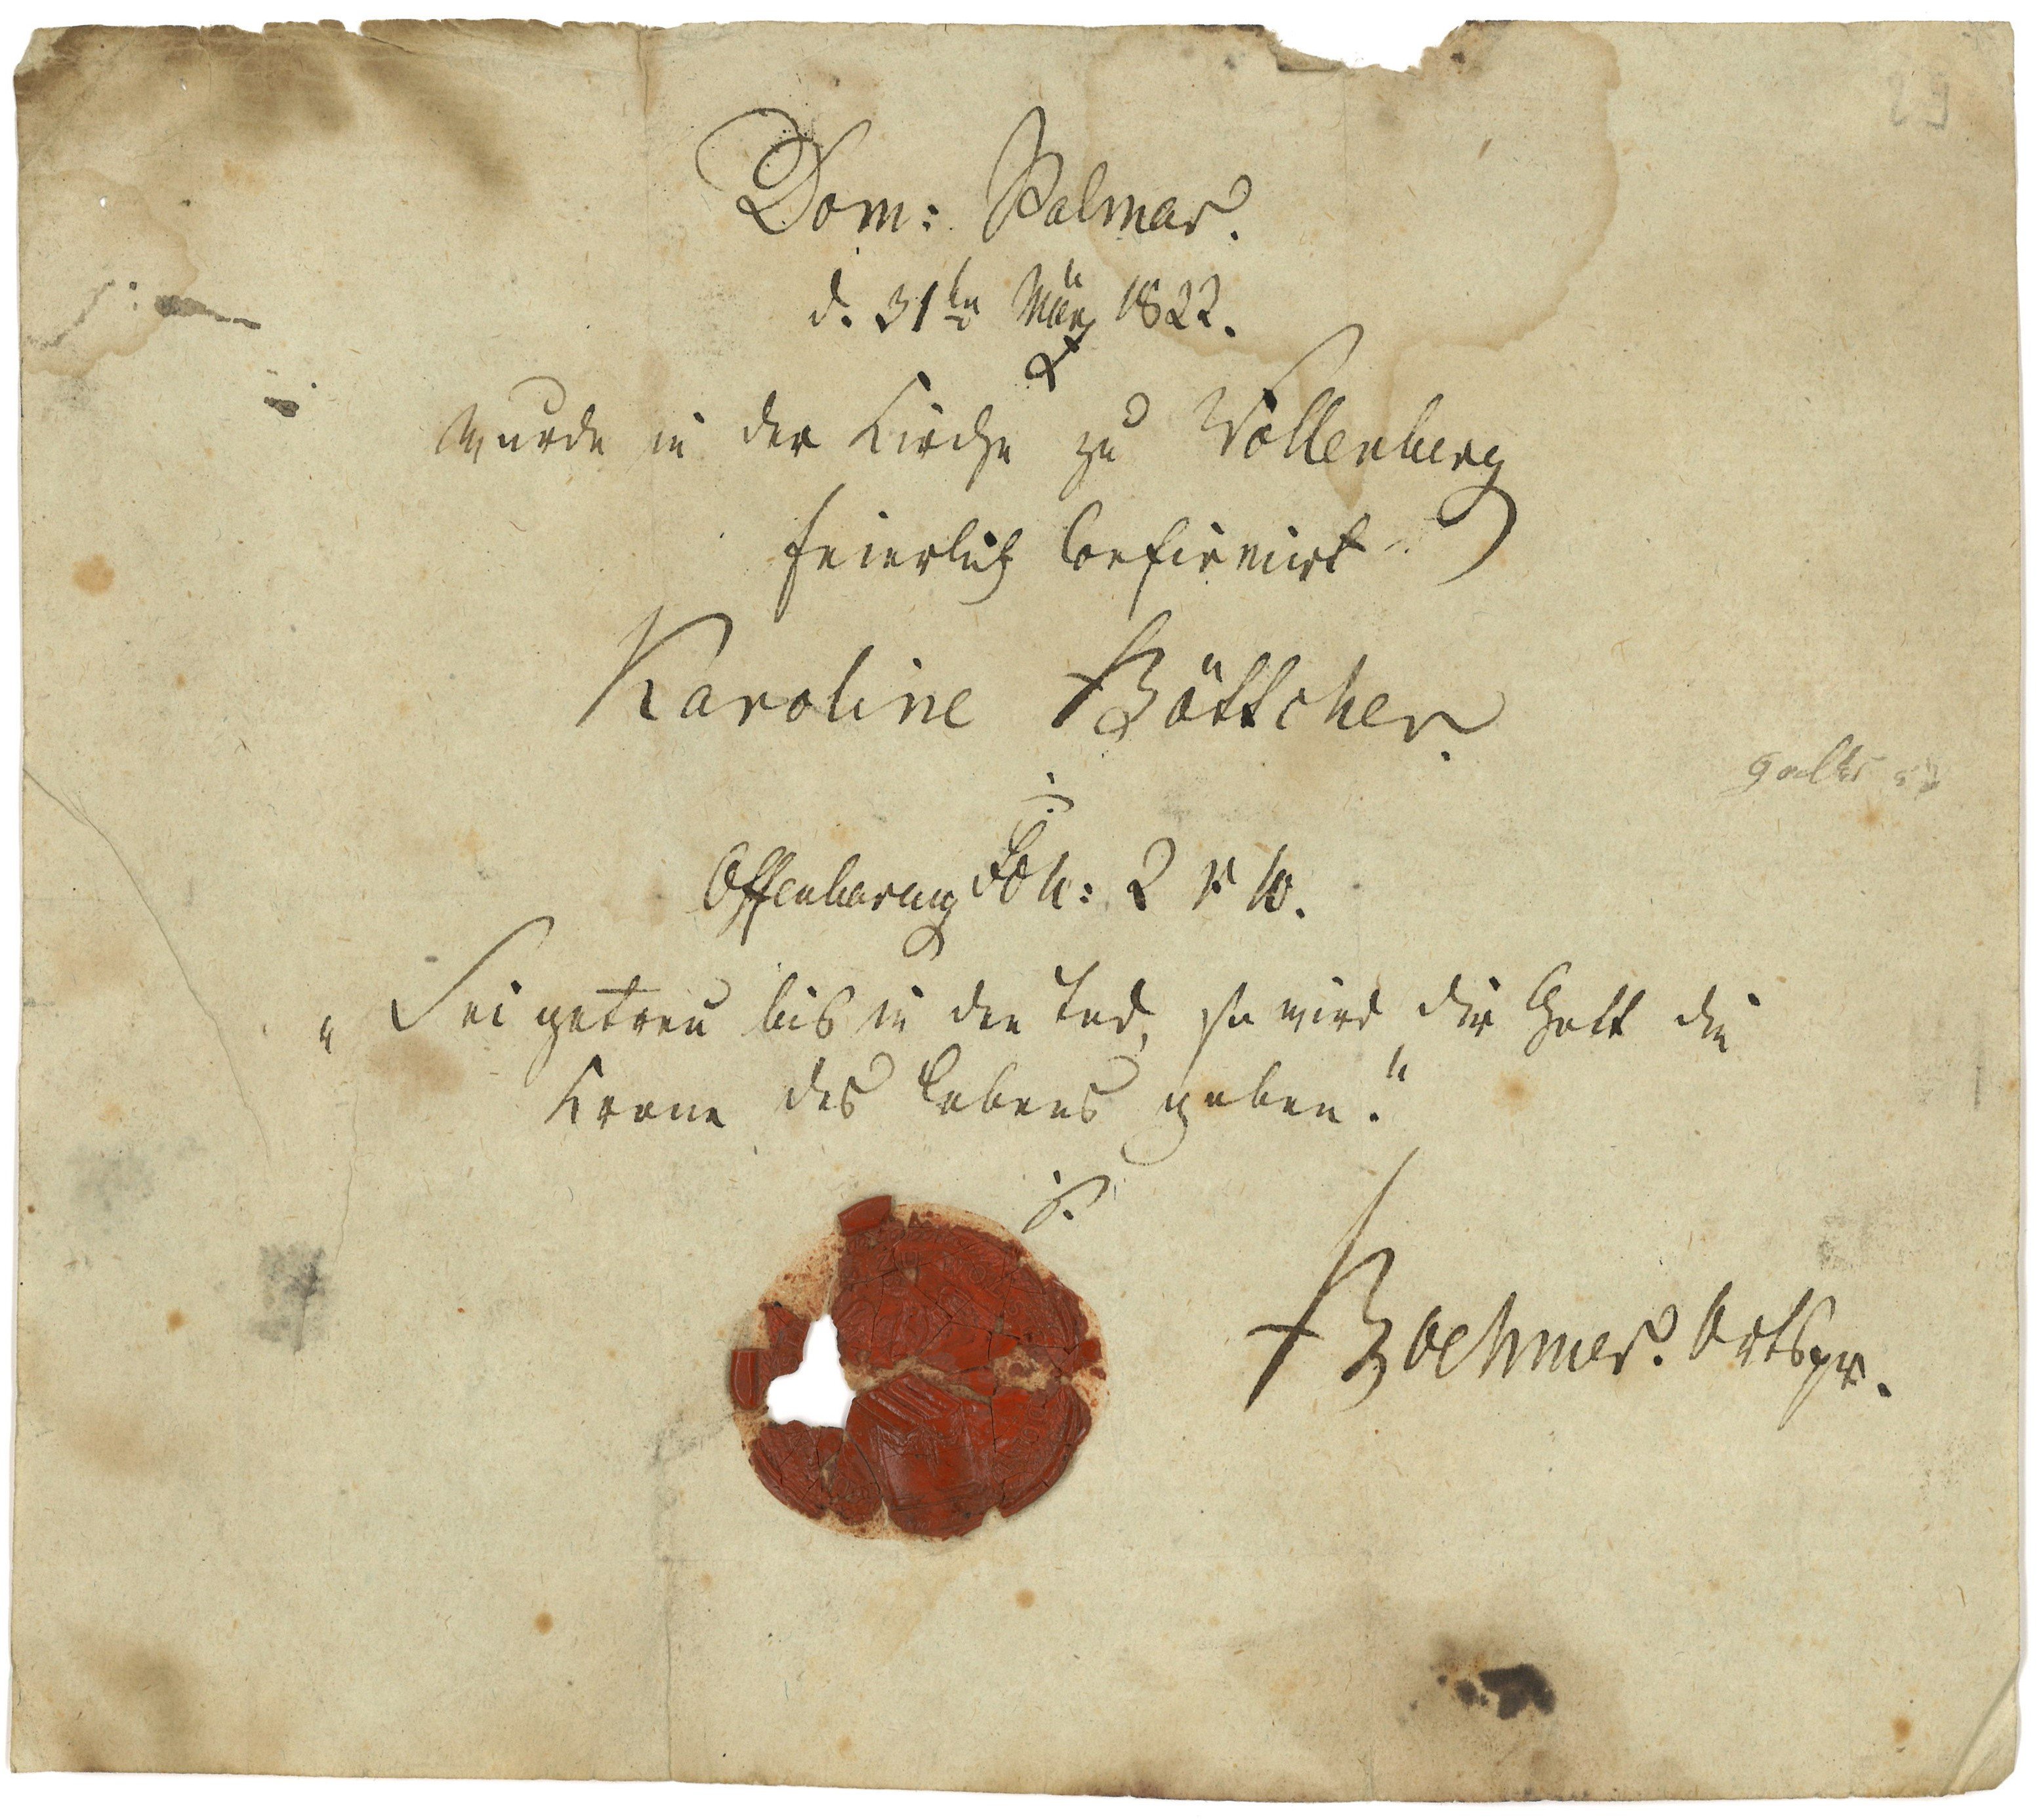 Konfirmationsschein für Karoline Böttcher in Wollenberg 1822 (Landesgeschichtliche Vereinigung für die Mark Brandenburg e.V., Archiv CC BY)